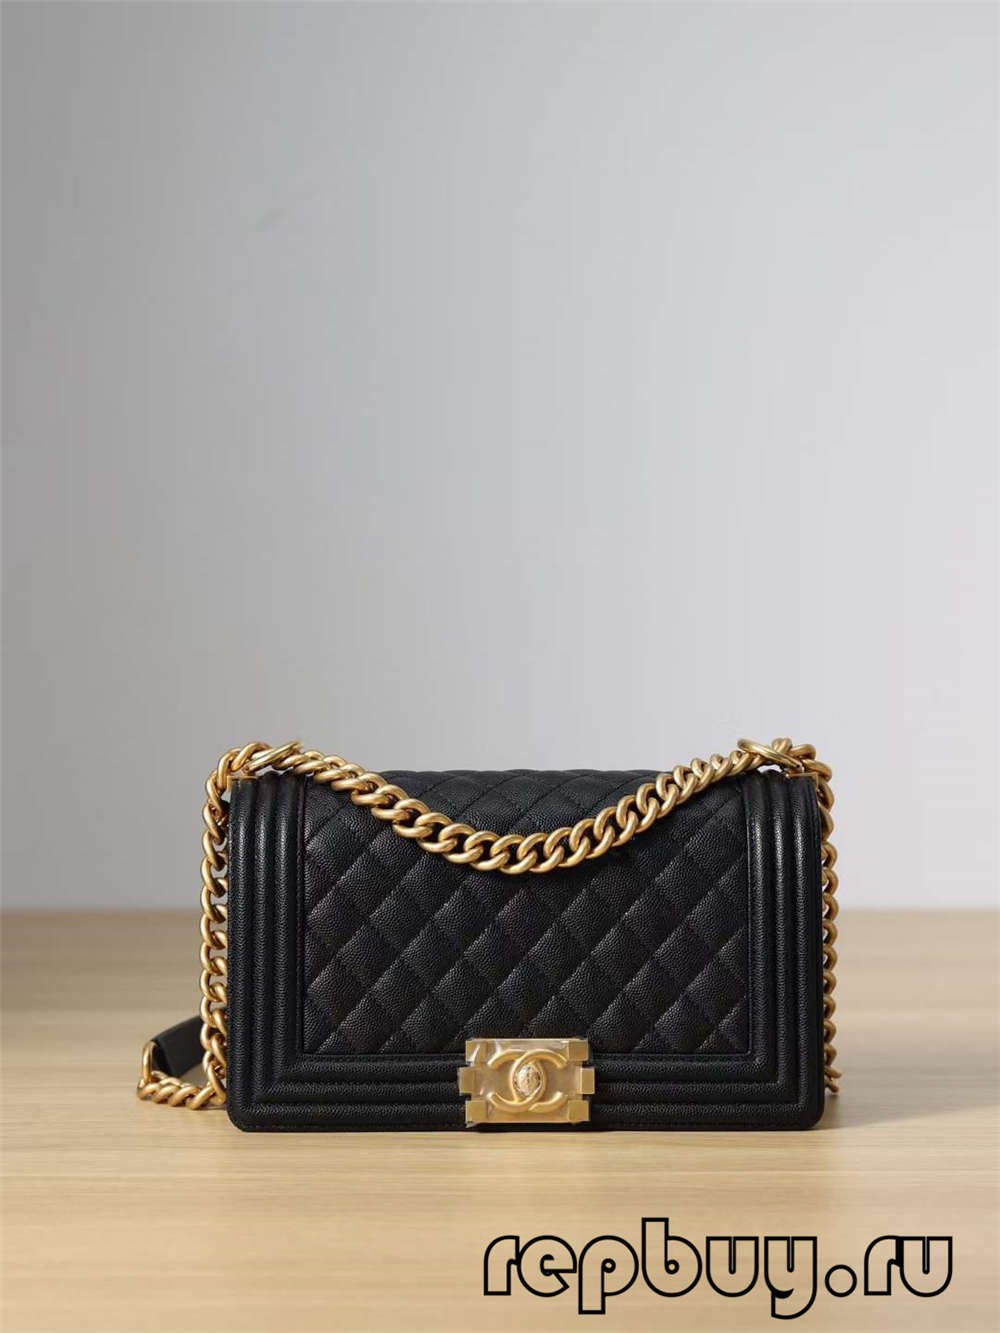 Верхняя копія сумкі Chanel Leboy з сярэдняй залатой спражкай (выданне 2022 г.) - Інтэрнэт-крама падробленай сумкі Louis Vuitton, копія дызайнерскай сумкі ru